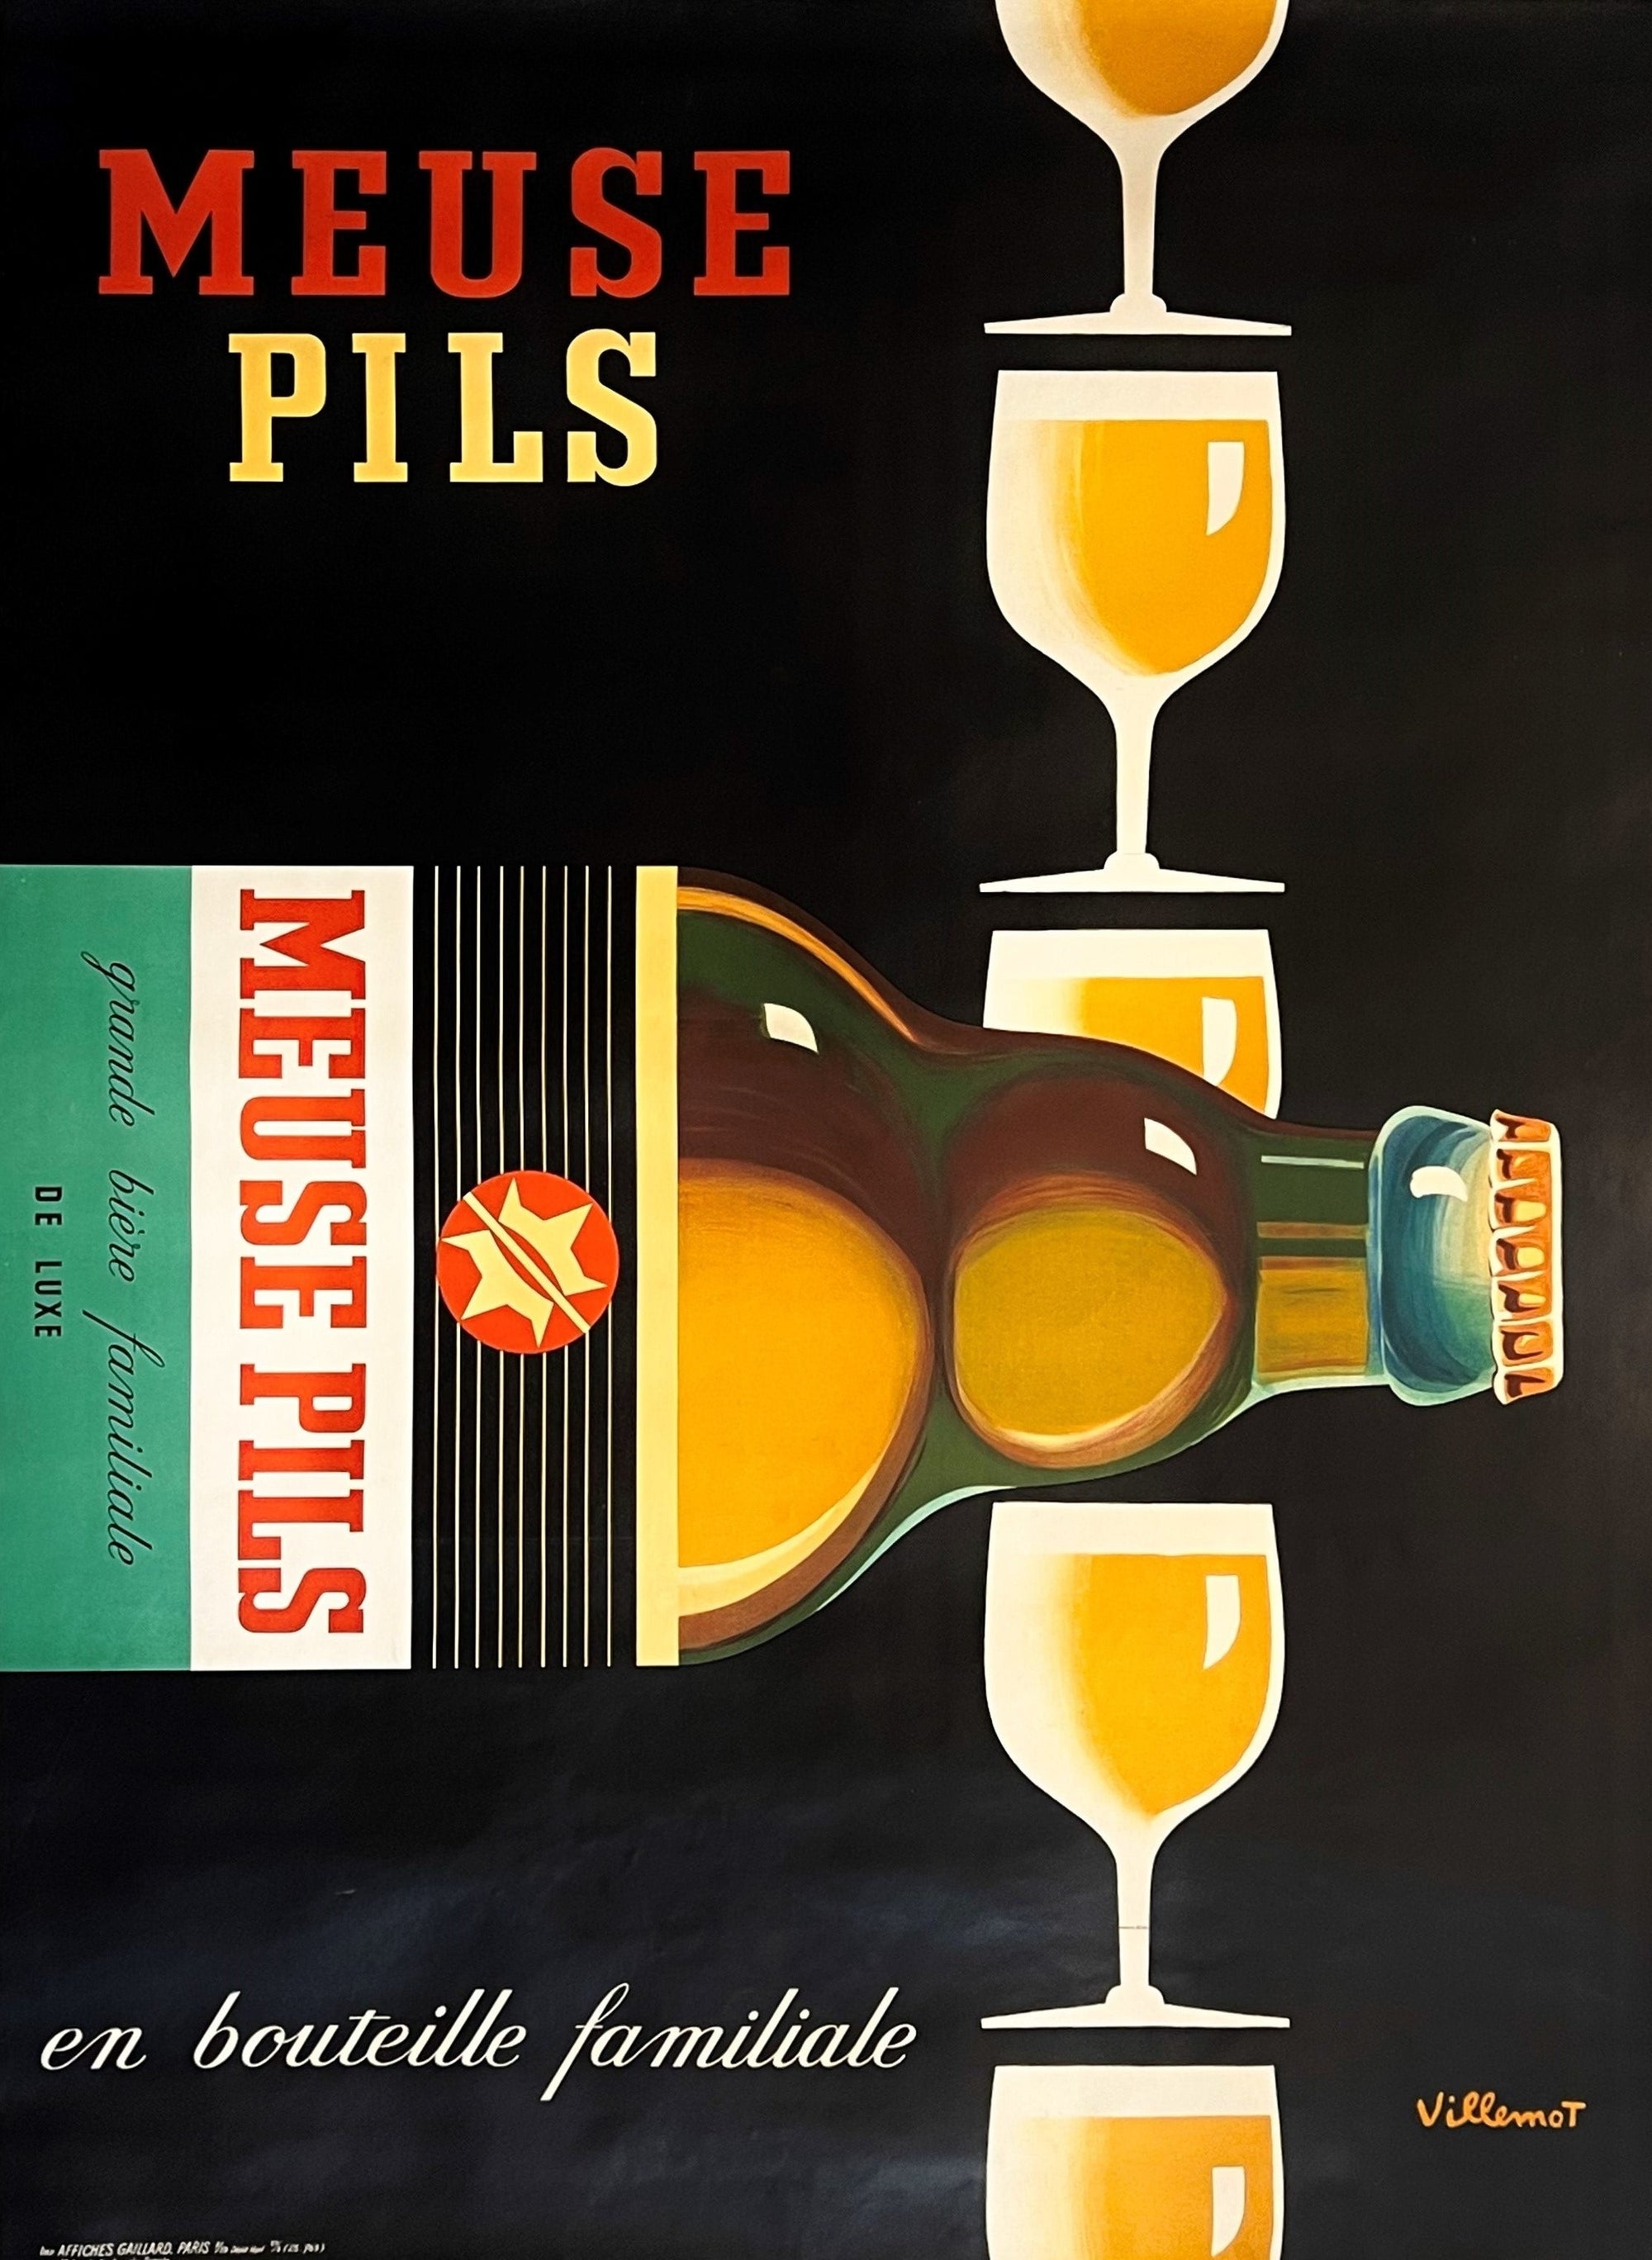 Meuse Pils by Villemot - Authentic Vintage Poster